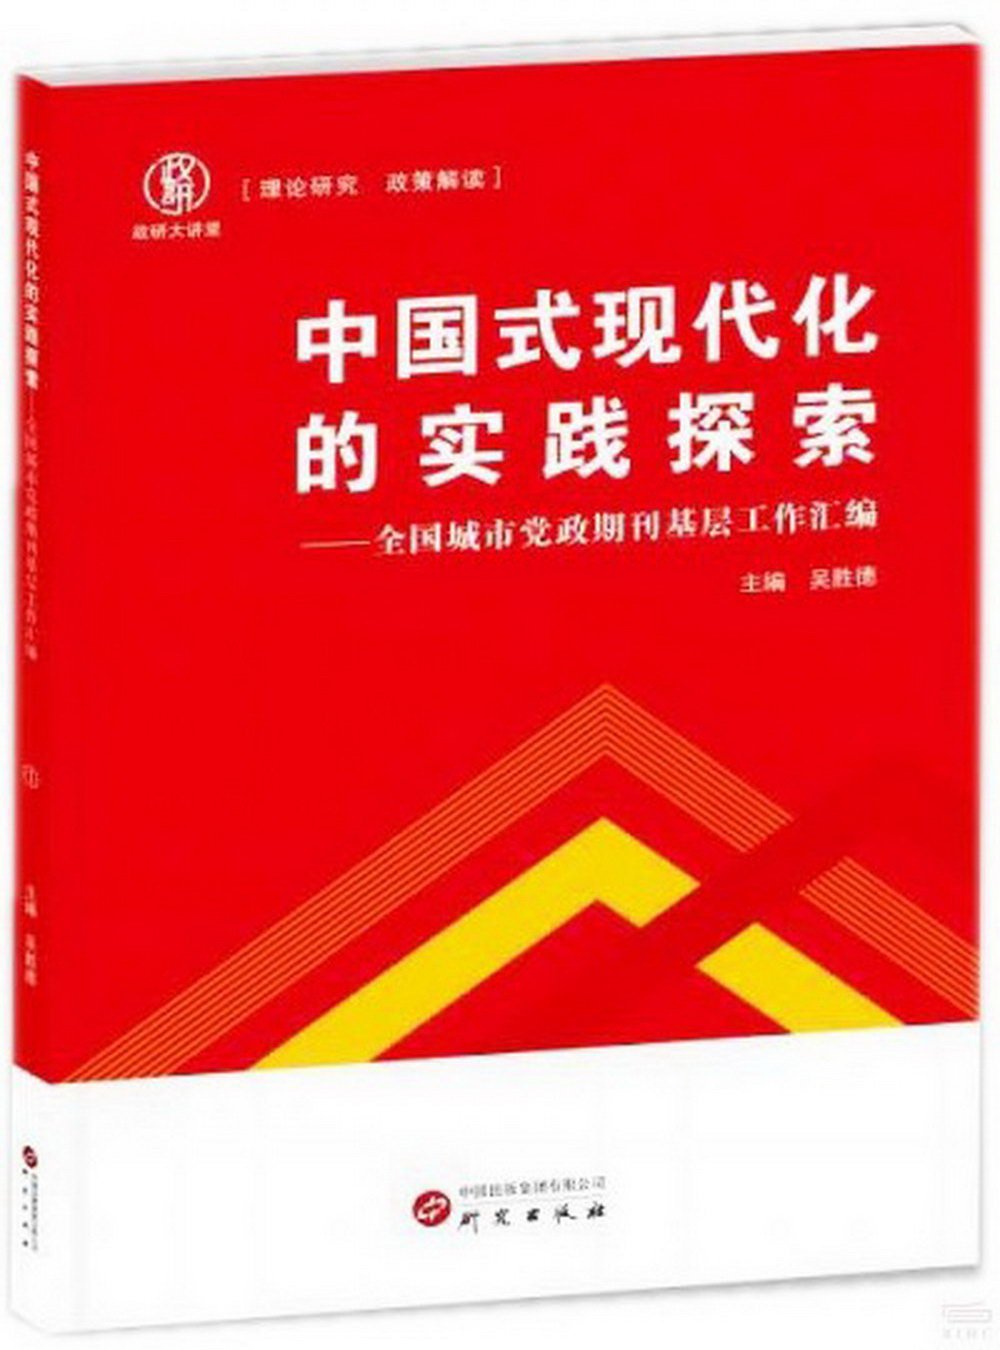 中國式現代化的實踐探索--全國城市黨政期刊基層工作彙編